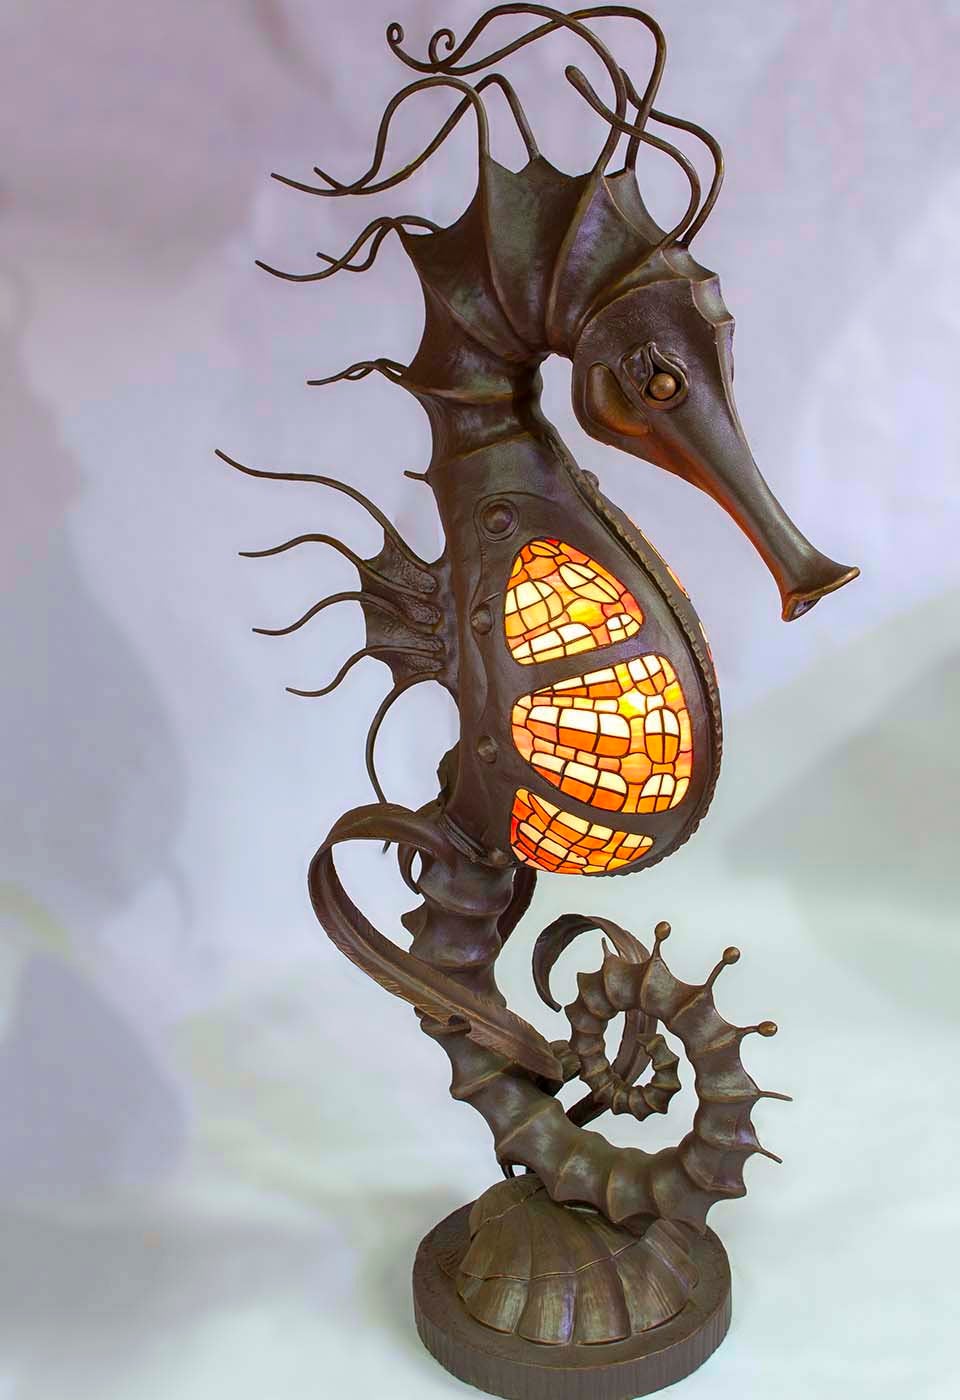 Floor lantern, floor lamp, garden lantern, terrace, garden, seahorse, fairy lantern, torch, sea decor, wild nature, iron gift, steel gift